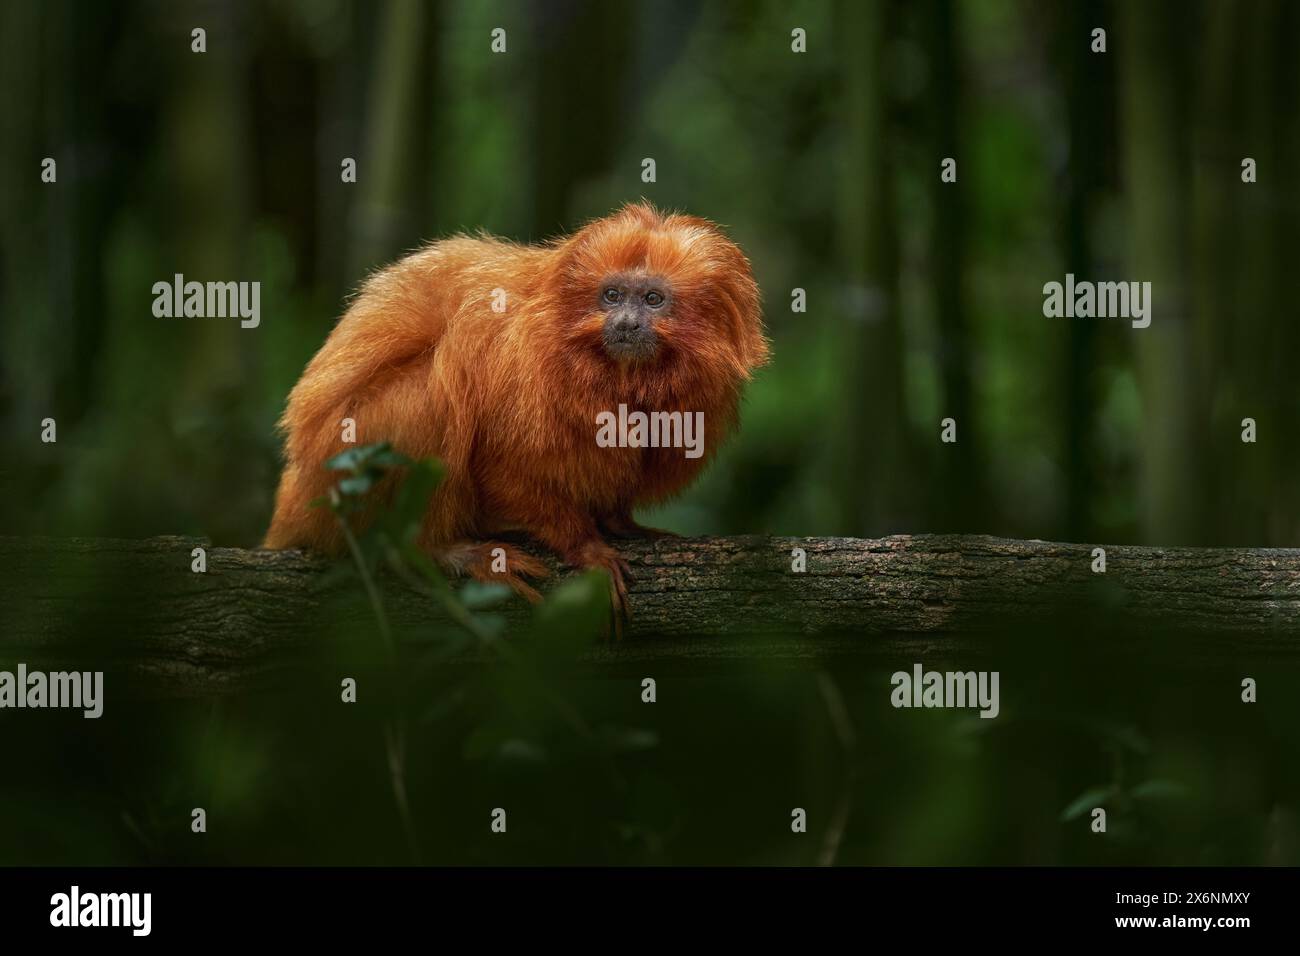 Leone con testa d'oro tamarin, Leontopithecus chrysomelas, Bahía in Brasile. Simpatica scimmia rossa-arancia nell'habitat tropicale della foresta naturale. Piccola testa dorata Foto Stock